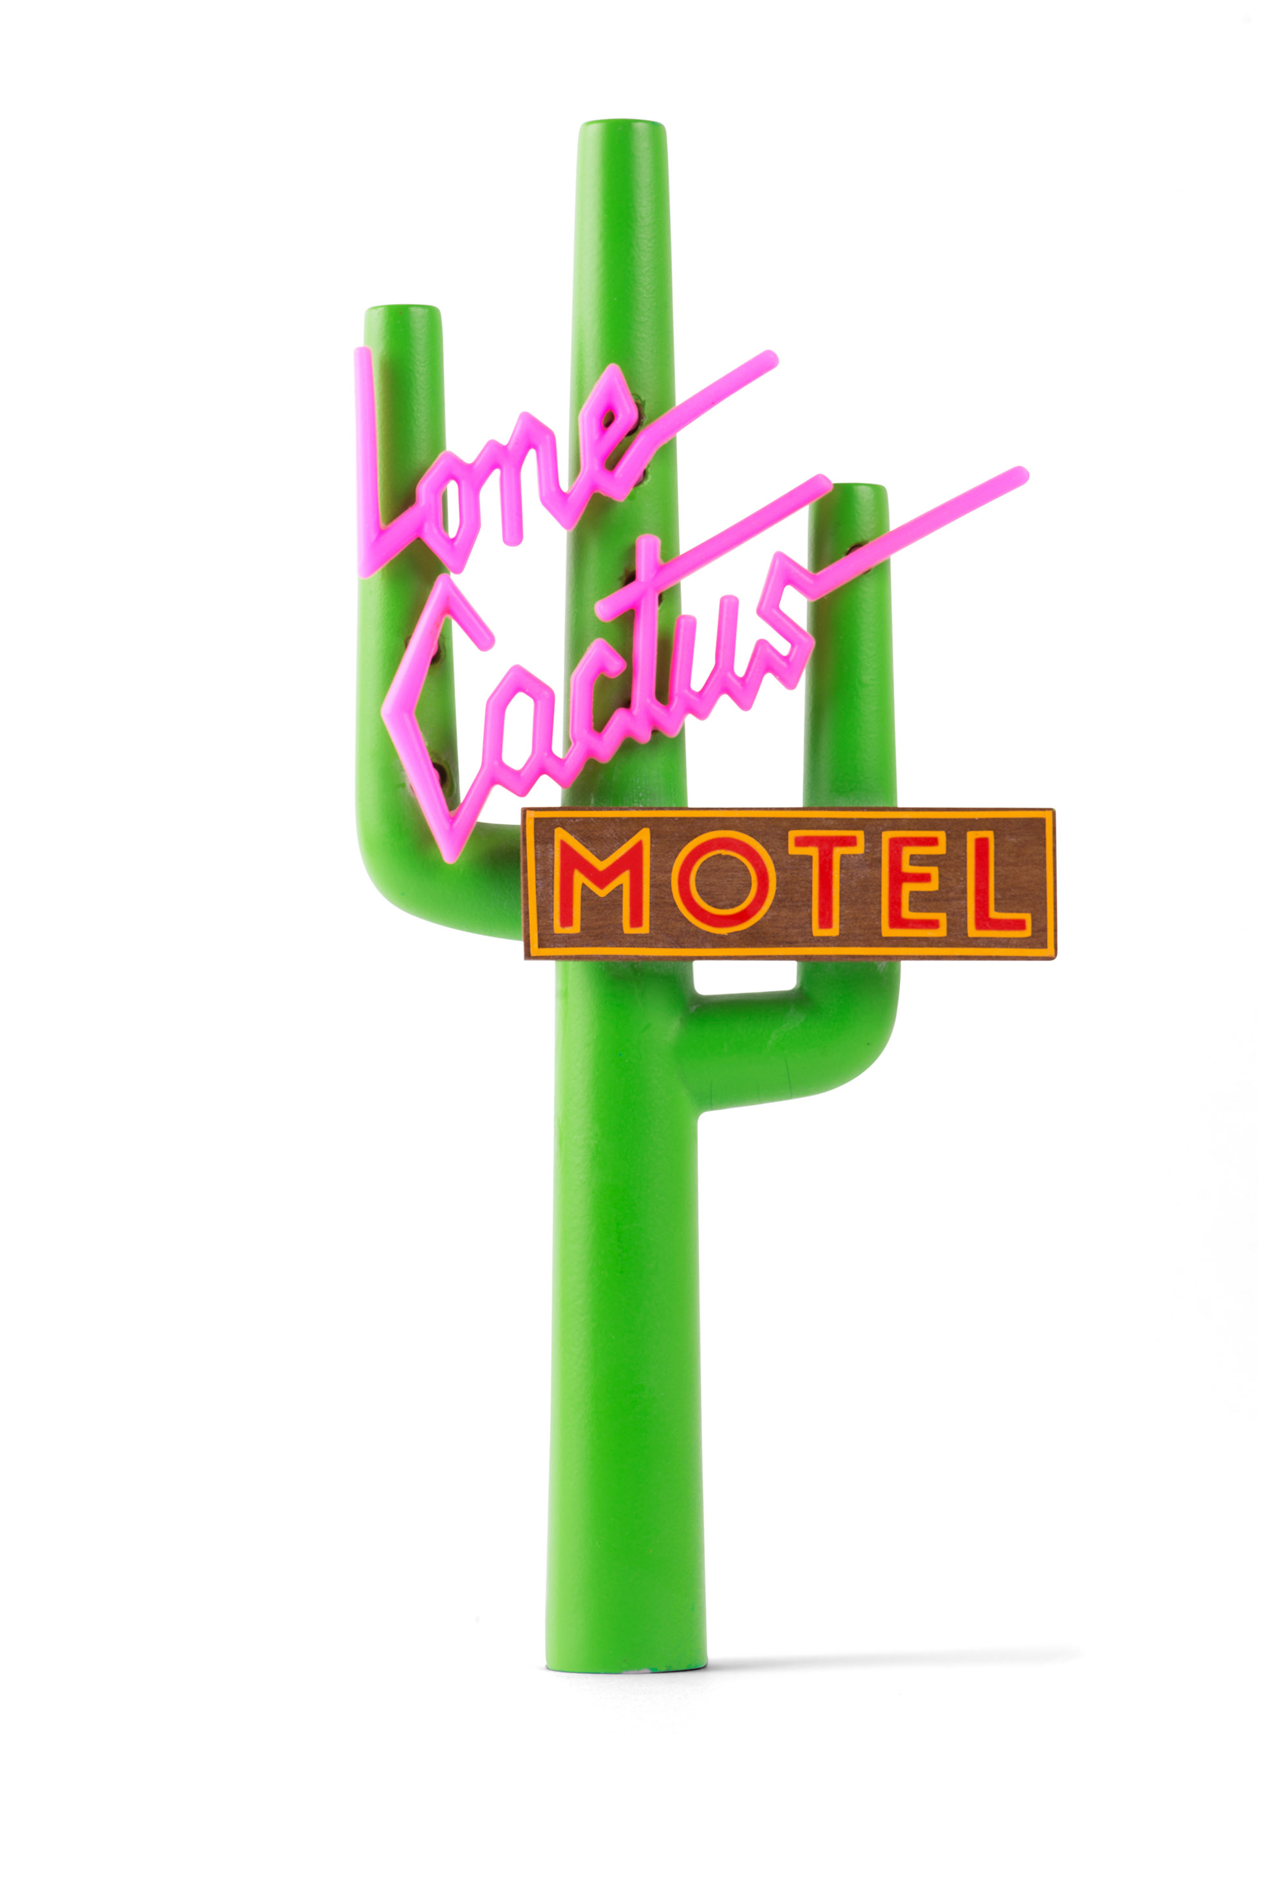 Lone cactus